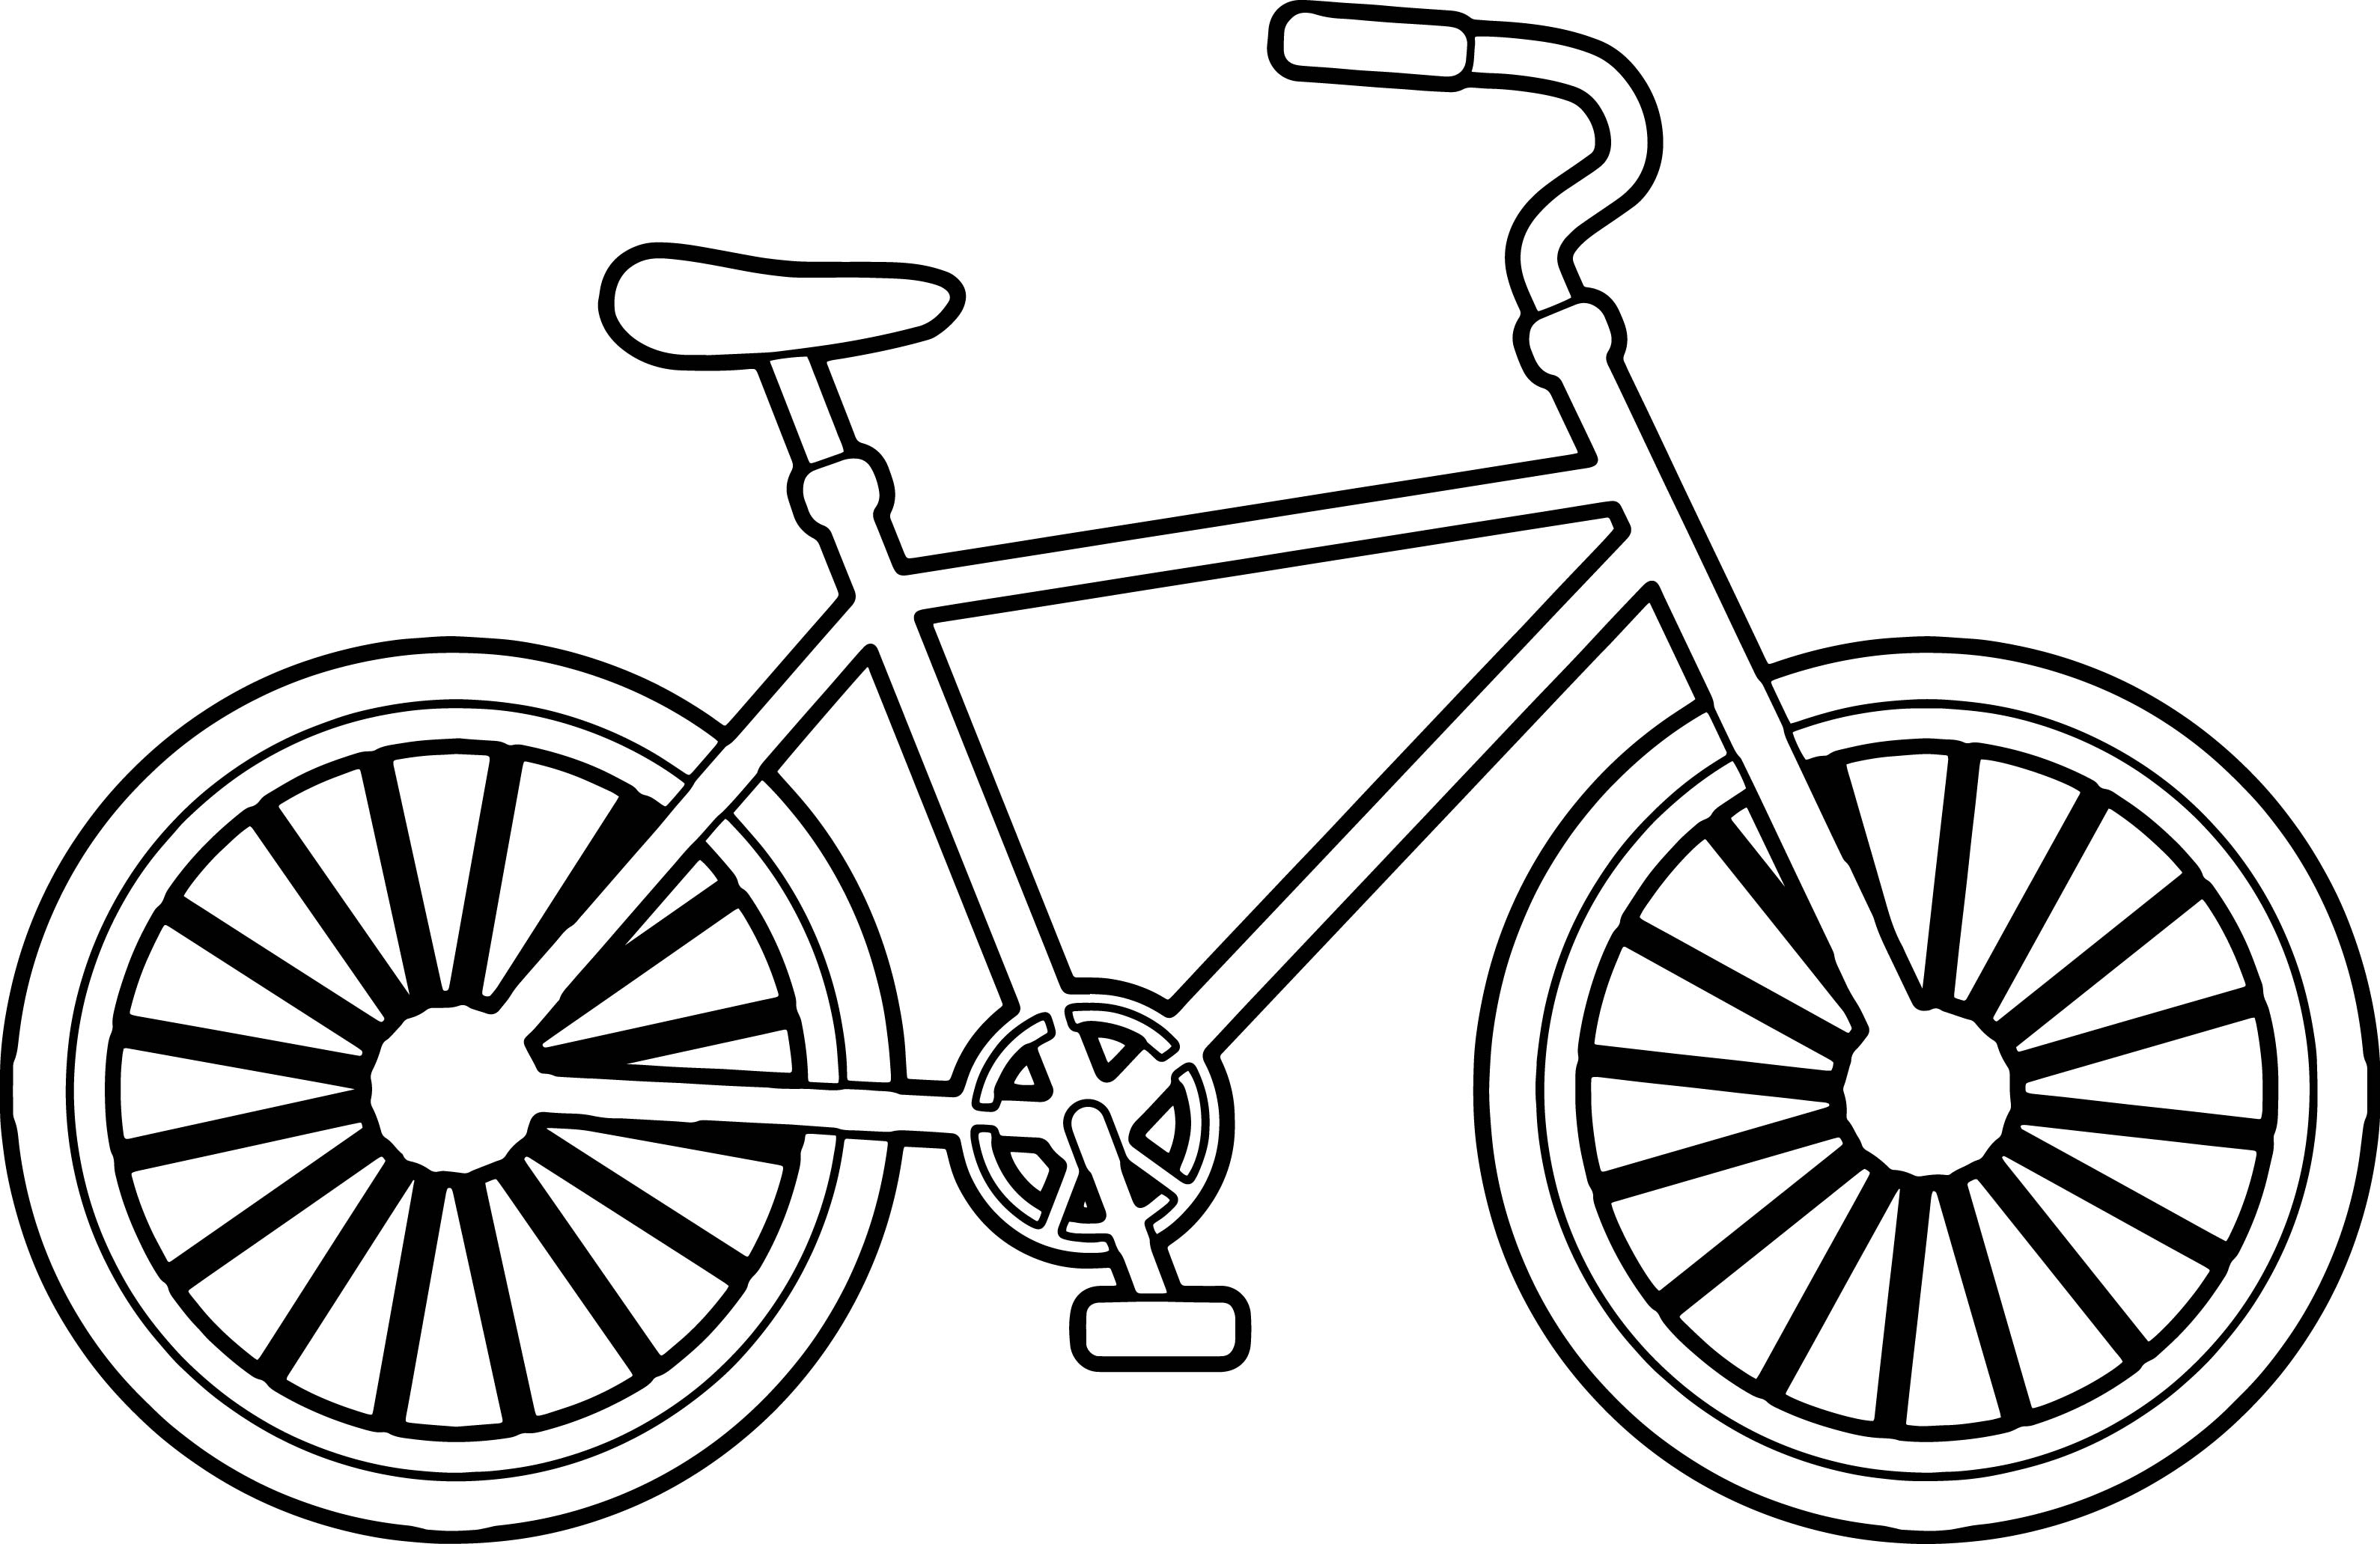 Hình vẽ xe đạp trong tranh sẽ khiến bạn nhớ về những kỷ niệm thời thơ ấu và cảm nhận được sự tự do và niềm vui khi chiếc xe đạp của mình chạy trên những con đường quen thuộc.